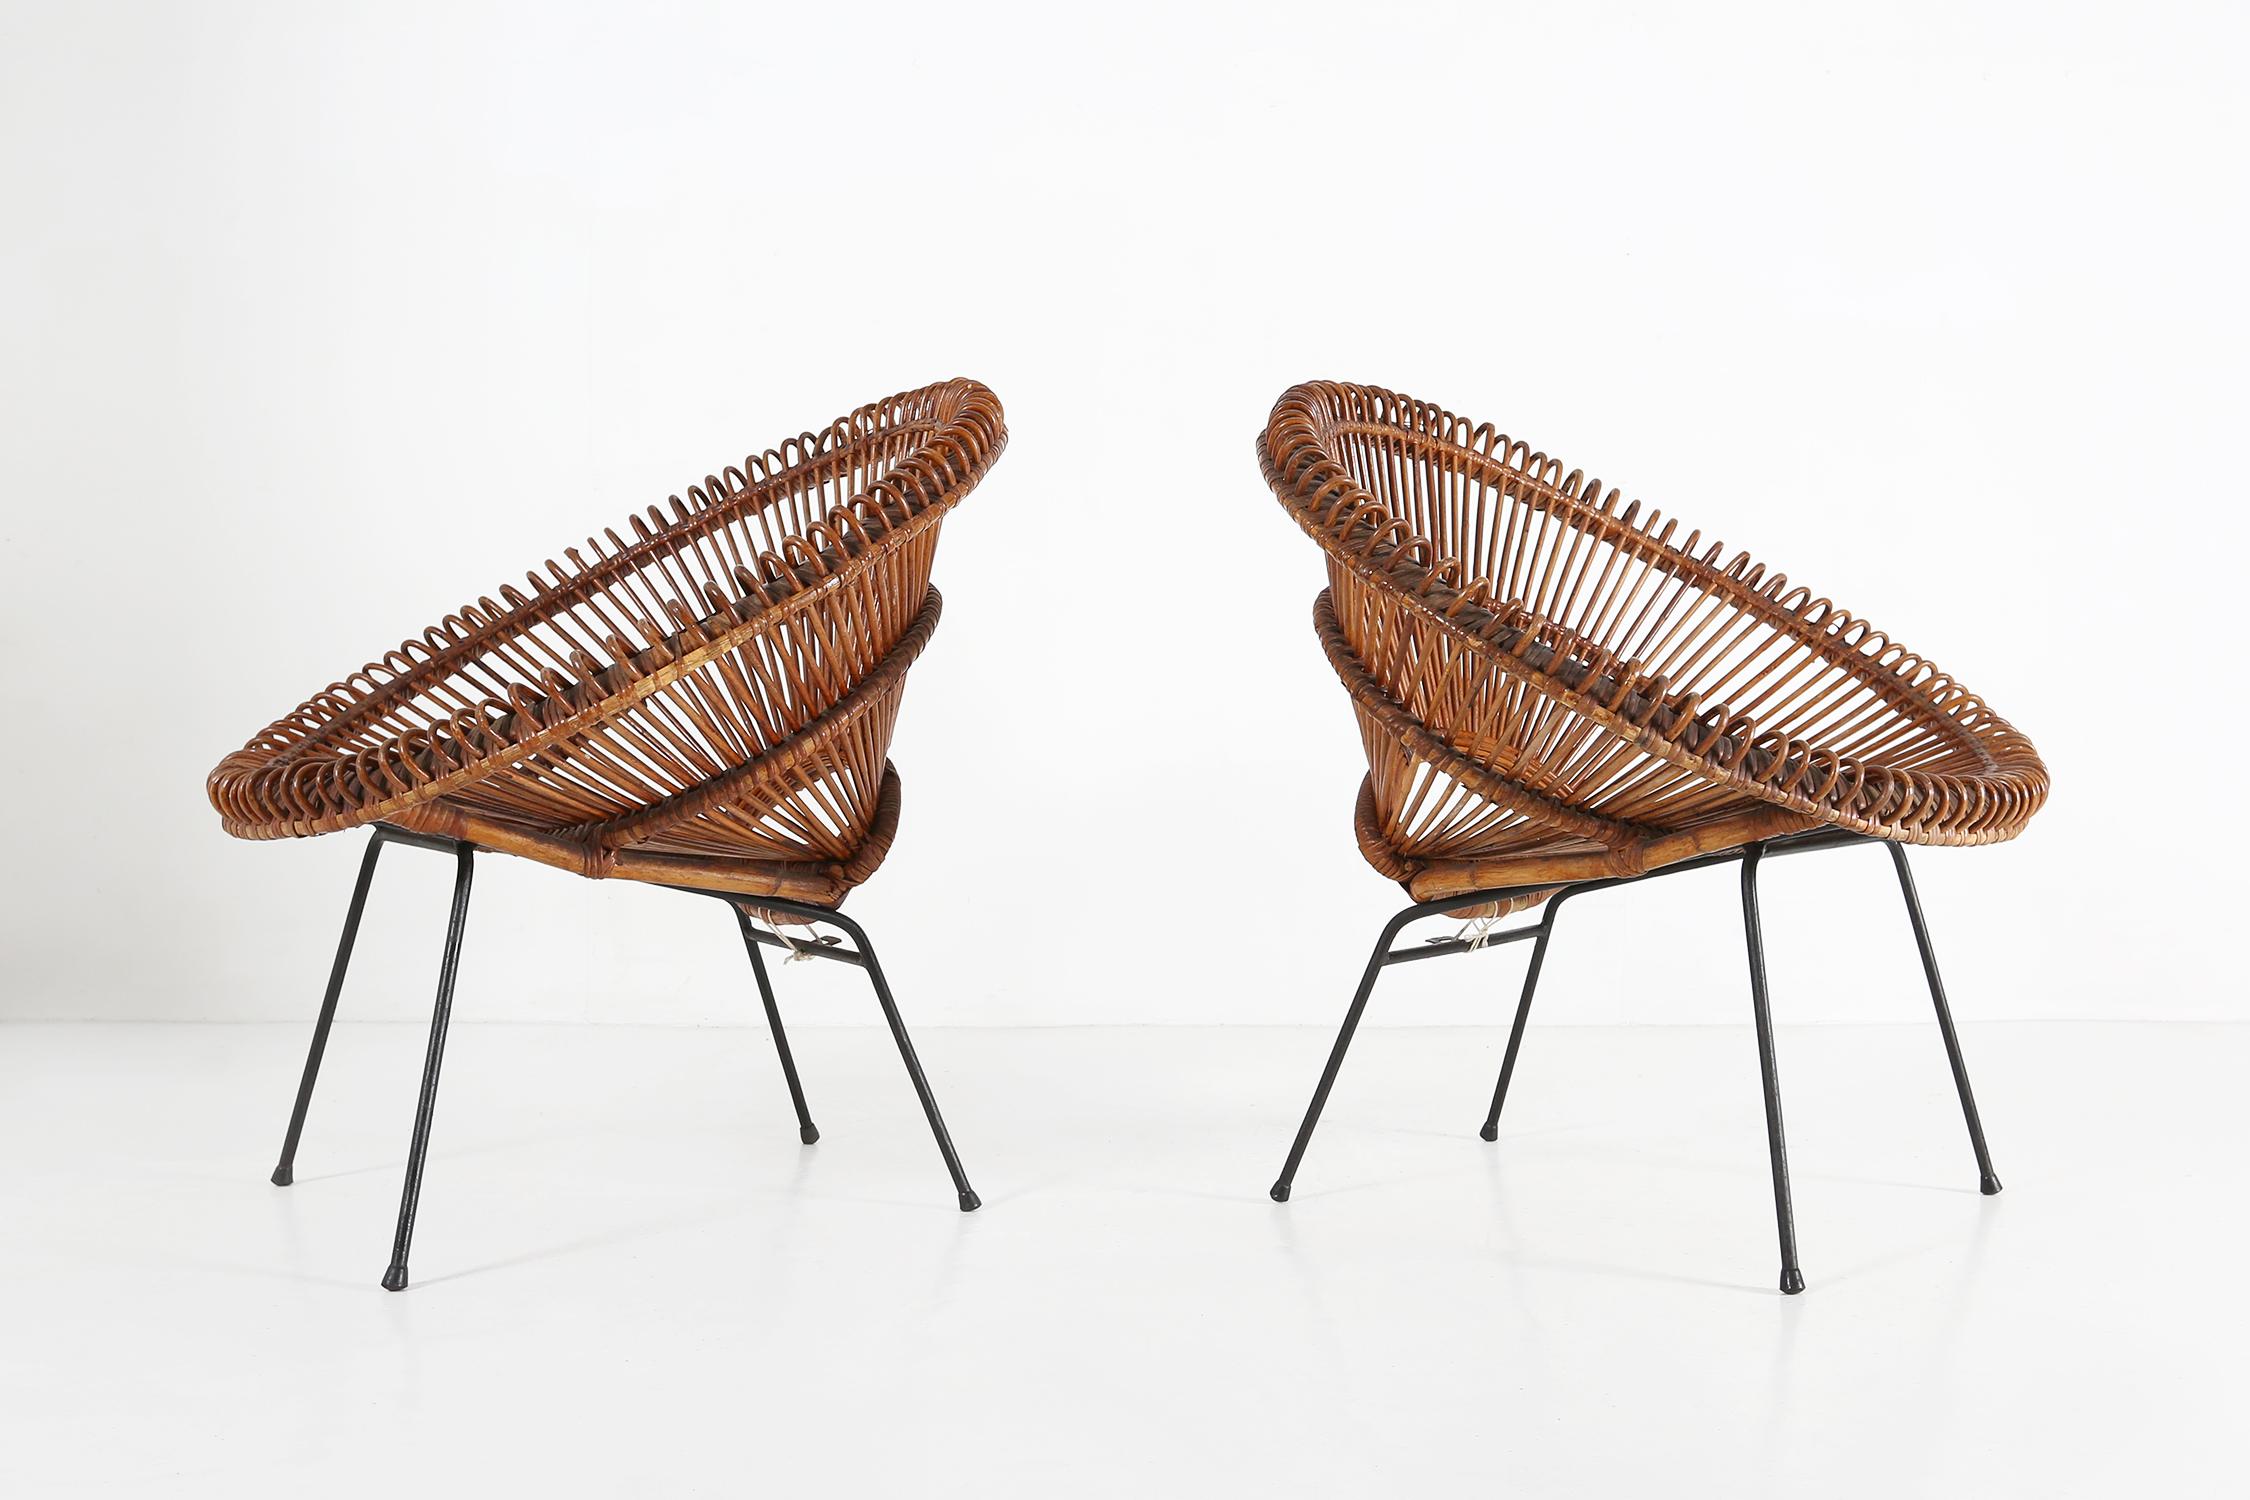 Paar Sessel von Janine Abraham & Dirk Jan Rol.
Hergestellt aus einem schwarzen Metallgestell und einem Rattansitz.